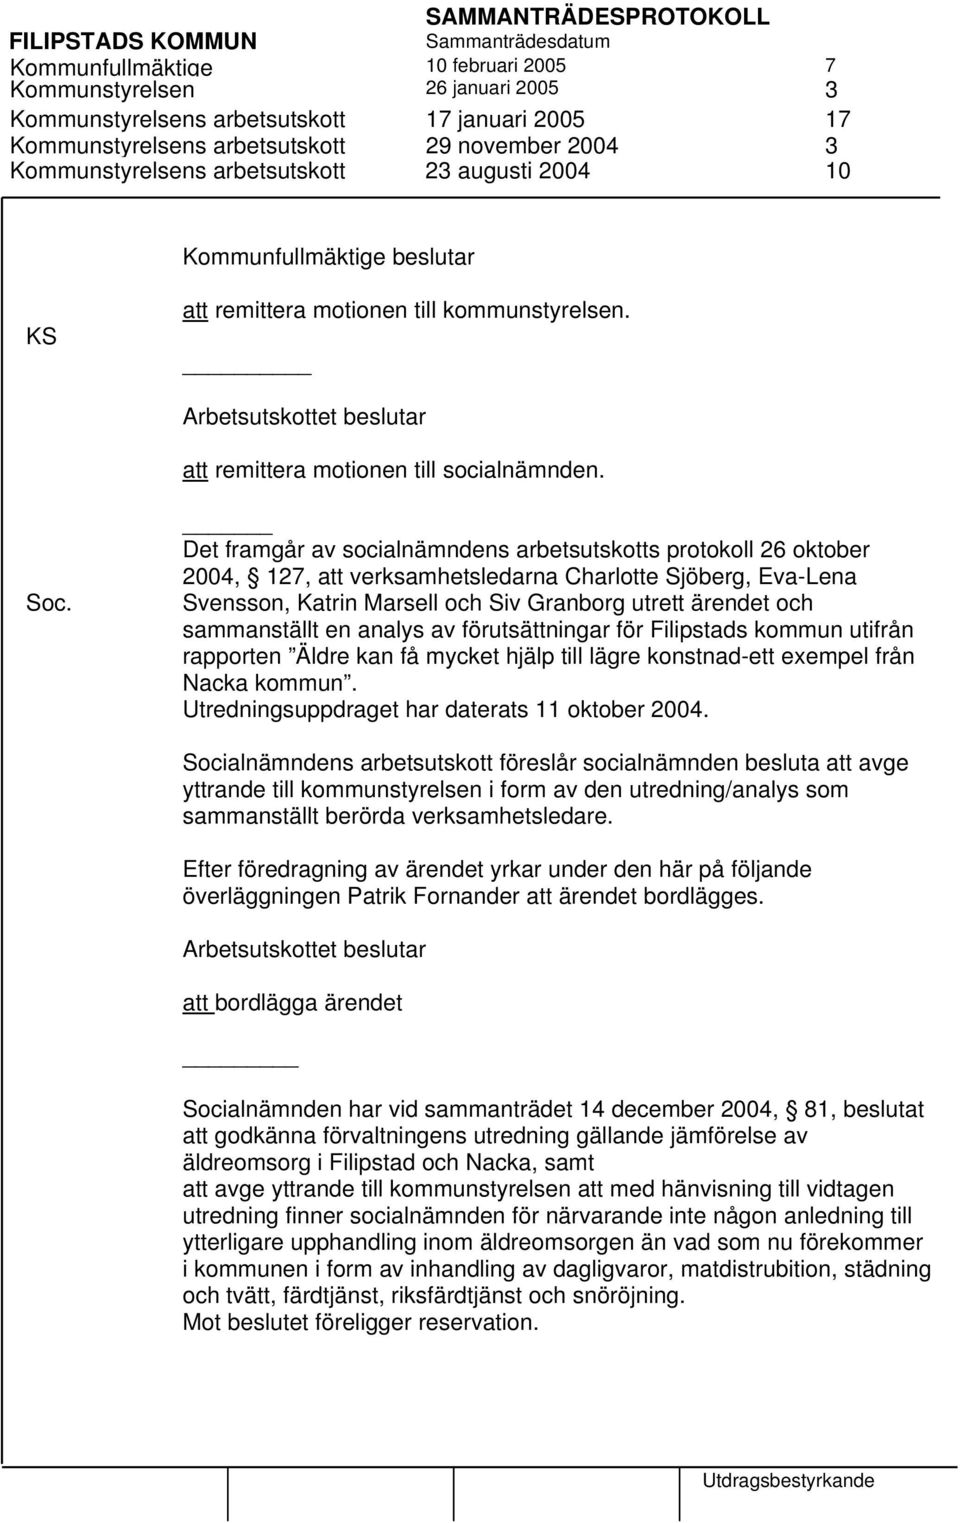 Det framgår av socialnämndens arbetsutskotts protokoll 26 oktober 2004, 127, att verksamhetsledarna Charlotte Sjöberg, Eva-Lena Svensson, Katrin Marsell och Siv Granborg utrett ärendet och